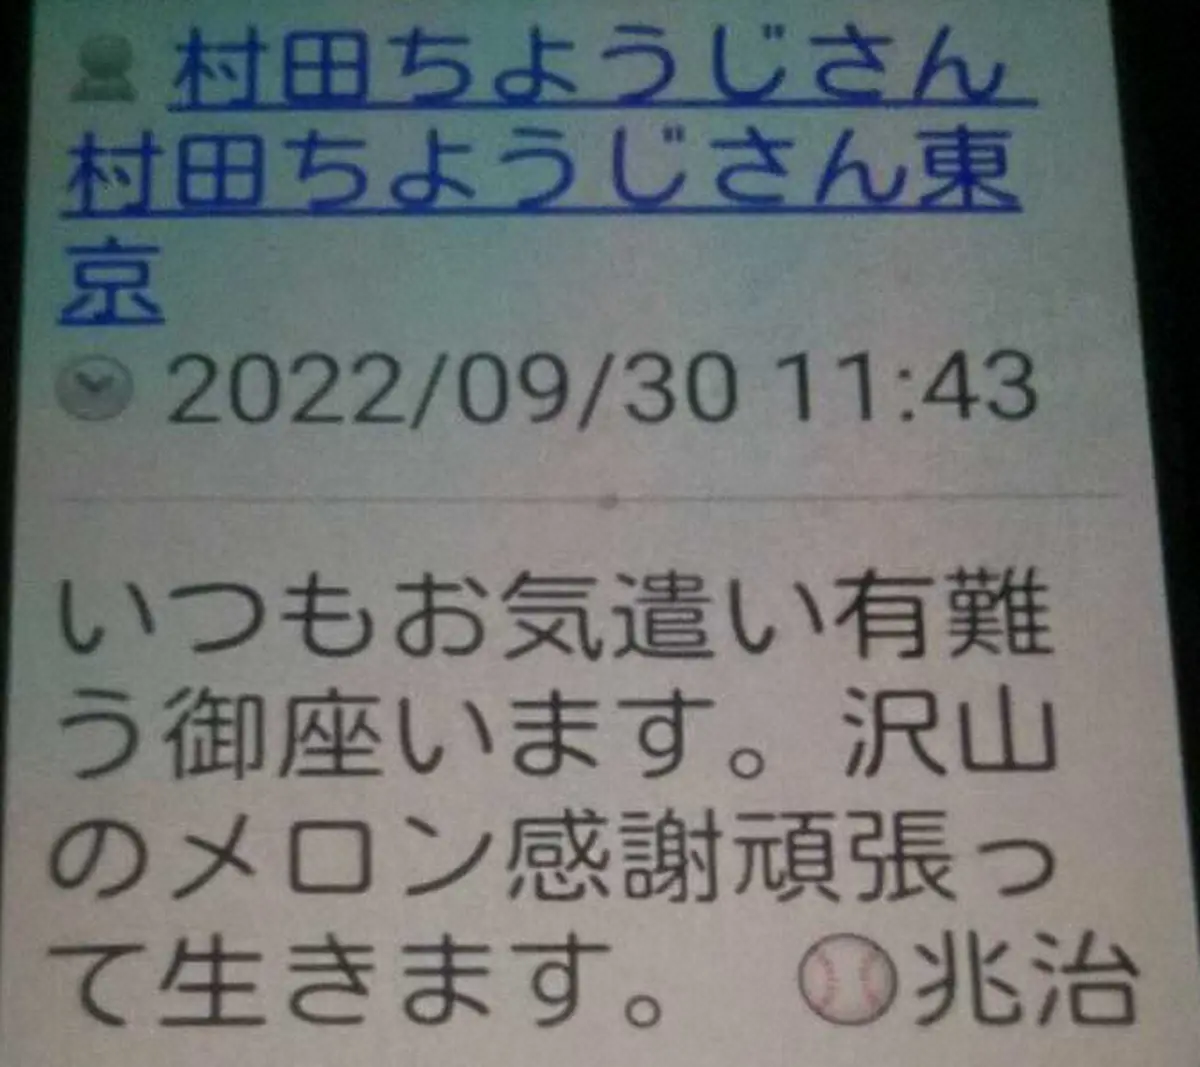 9月30日に村田さんから金さんへ届いたメール(金さん提供)